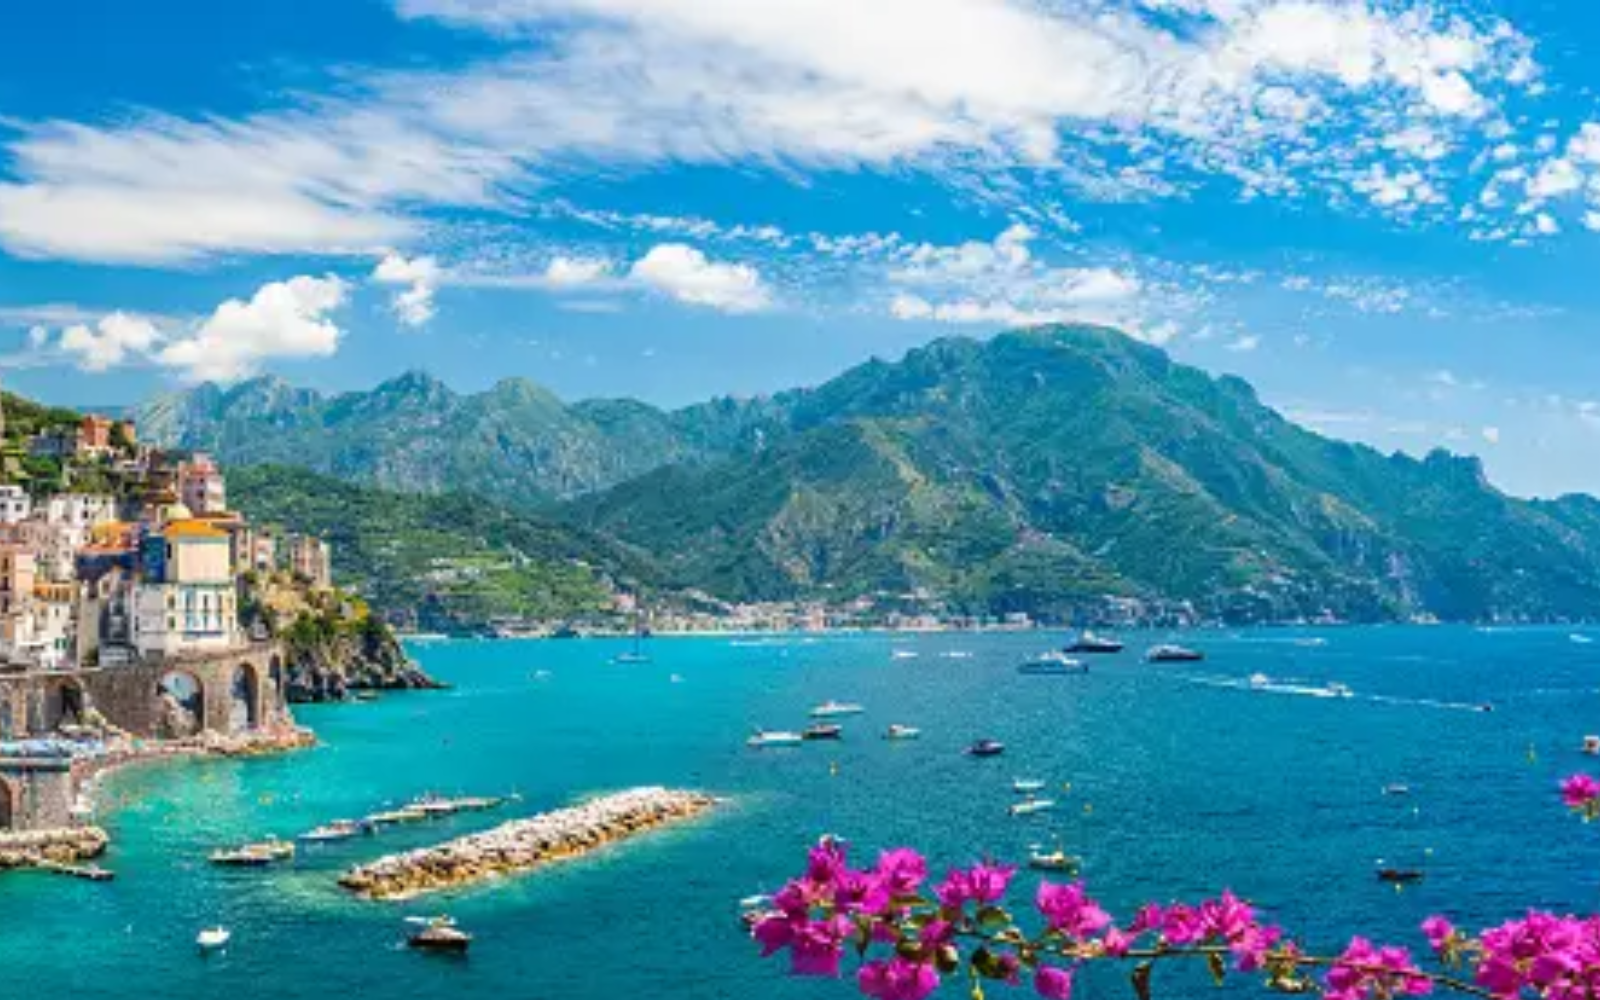 The Amalfi Coast Beauty